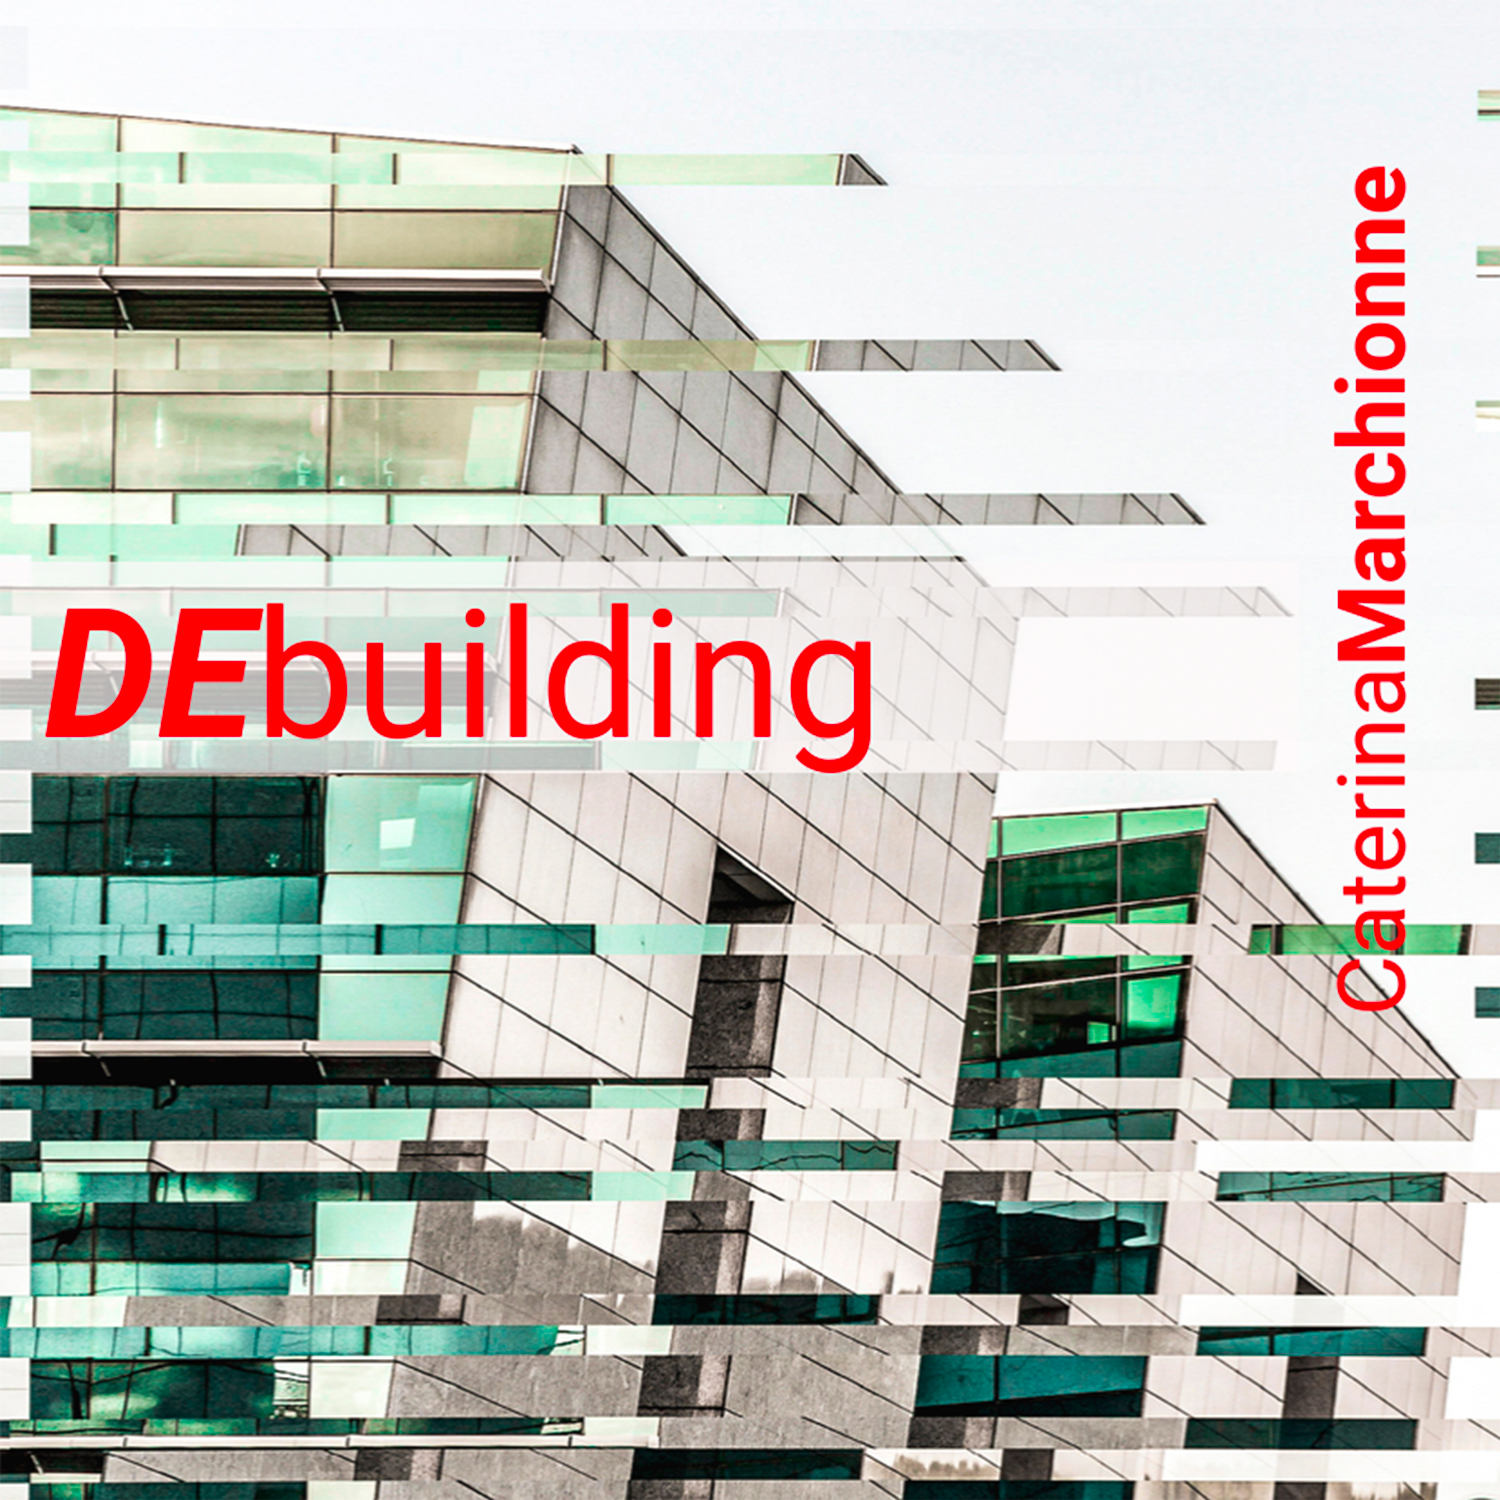 DEbuilding